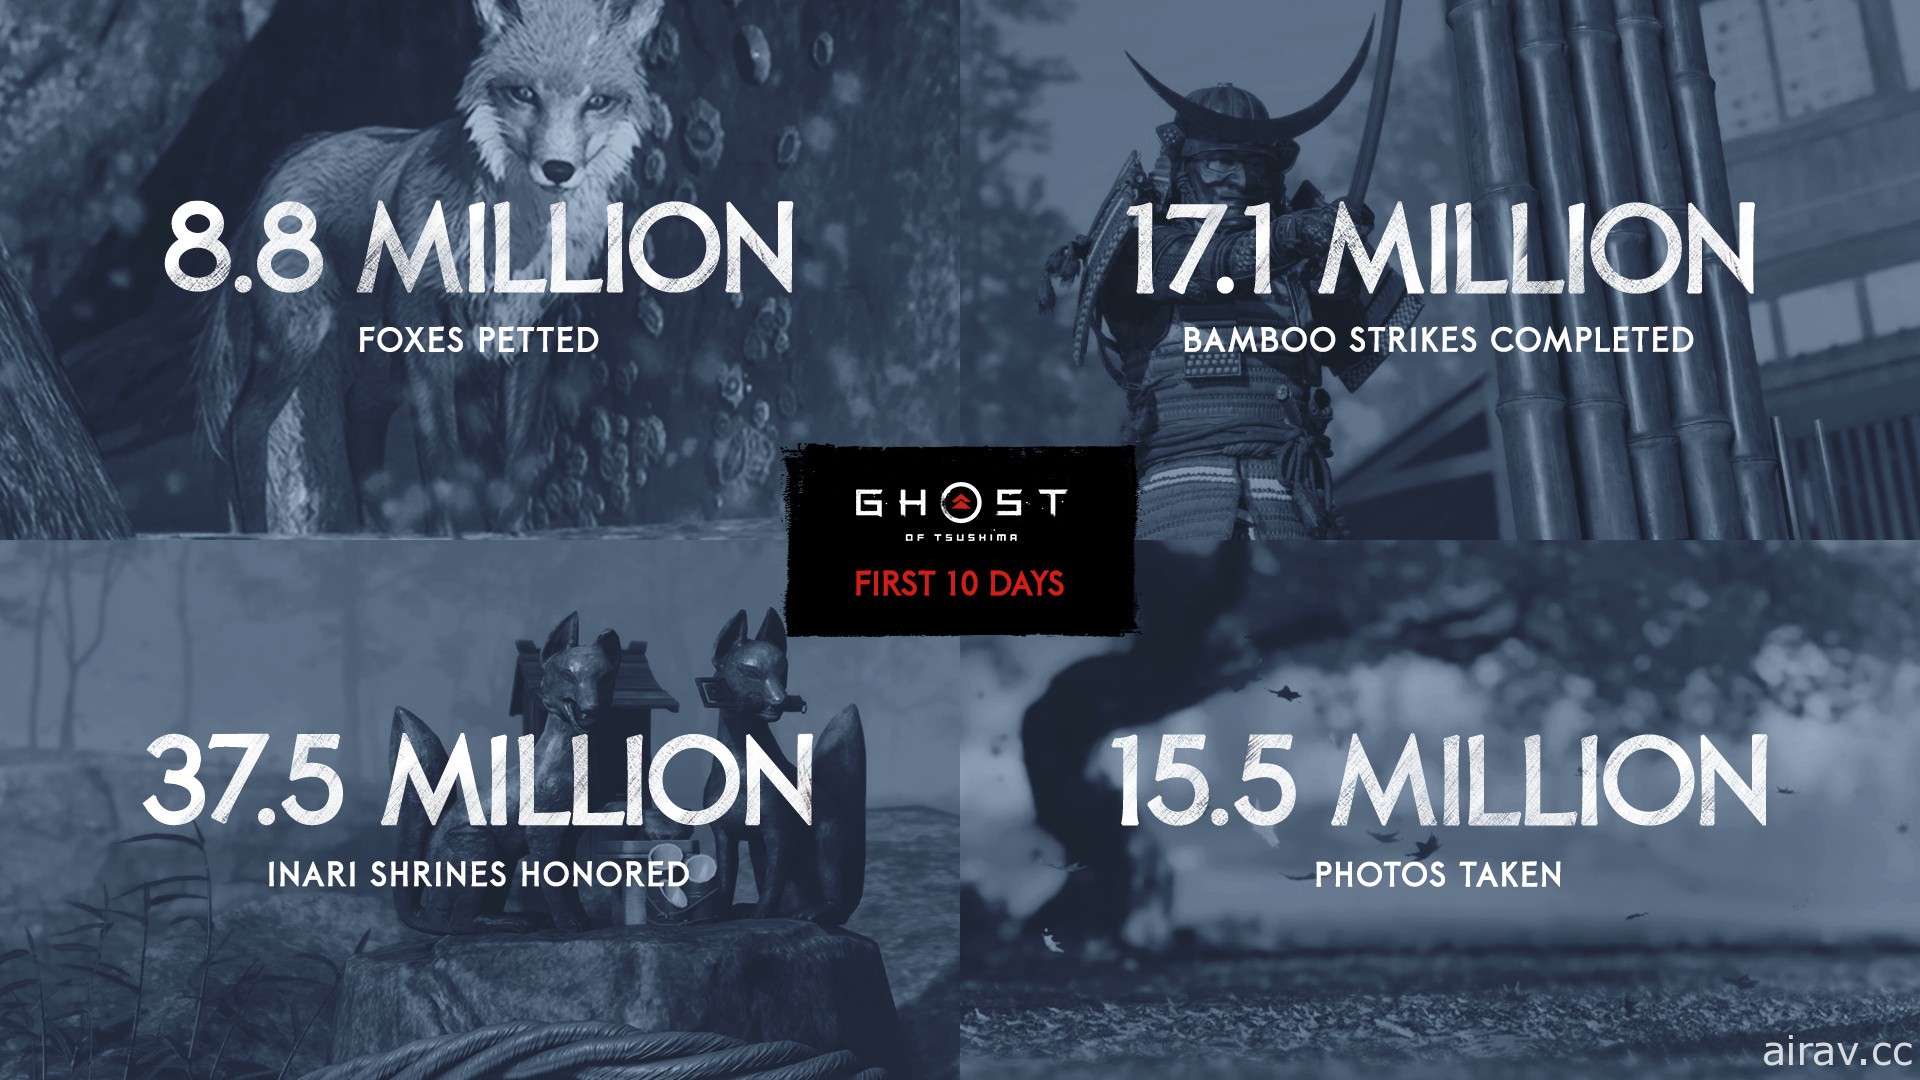 《對馬戰鬼》公布上市後趣味統計數字 總計創造 5700 萬場決鬥、880 萬隻狐狸被摸頭